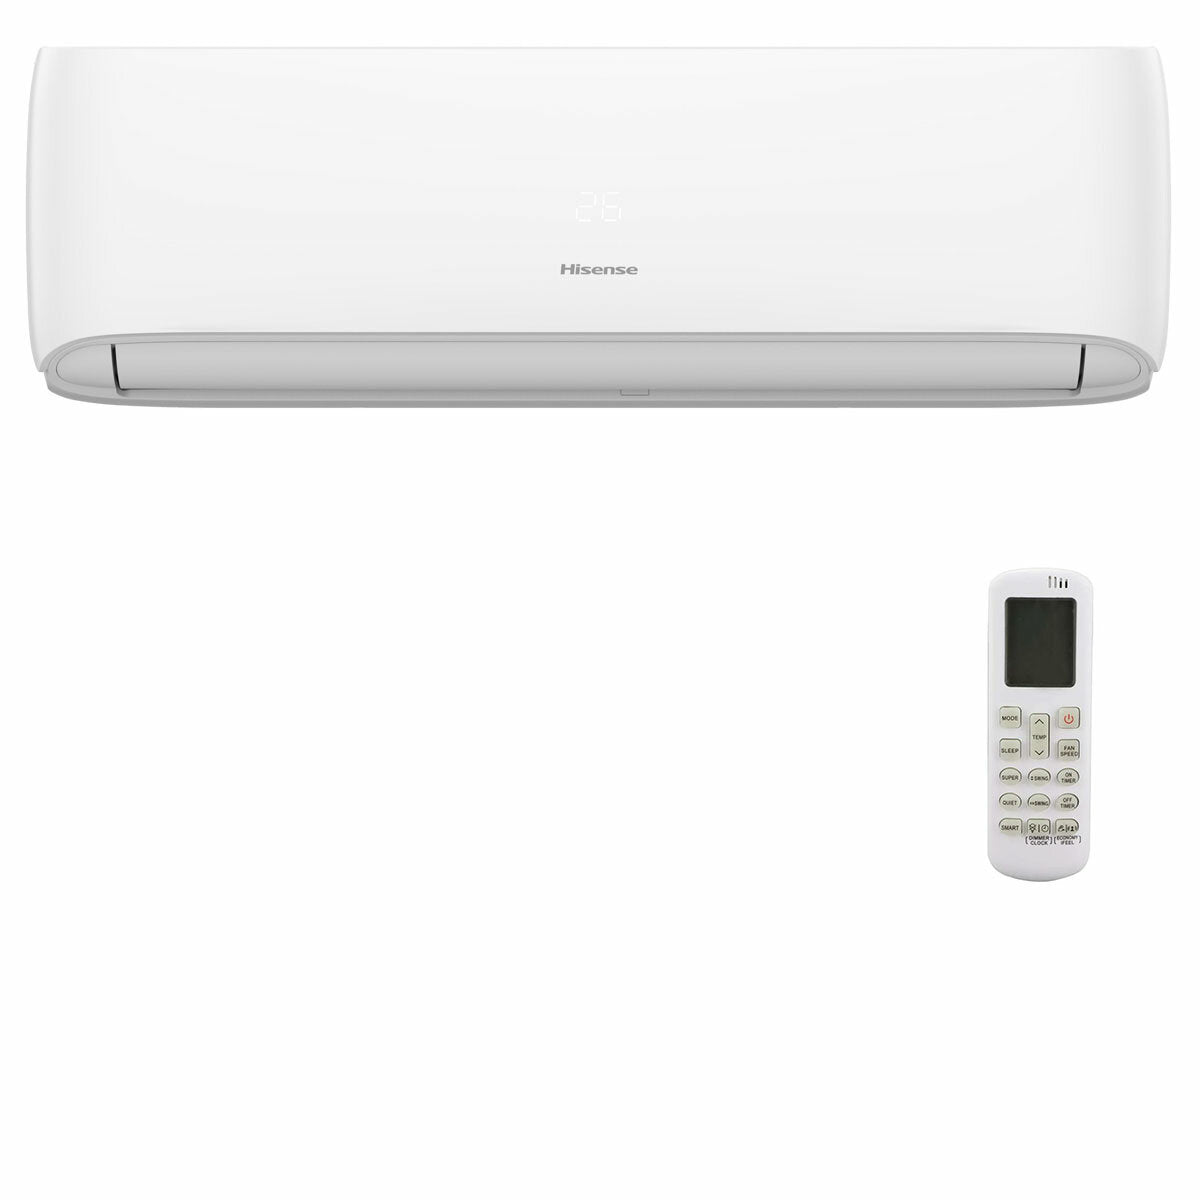 Hisense Hi-Comfort quadri split air conditioner 7000 + 9000 + 9000 + 24000 BTU wifi inverter outdoor unit 12.5 kW